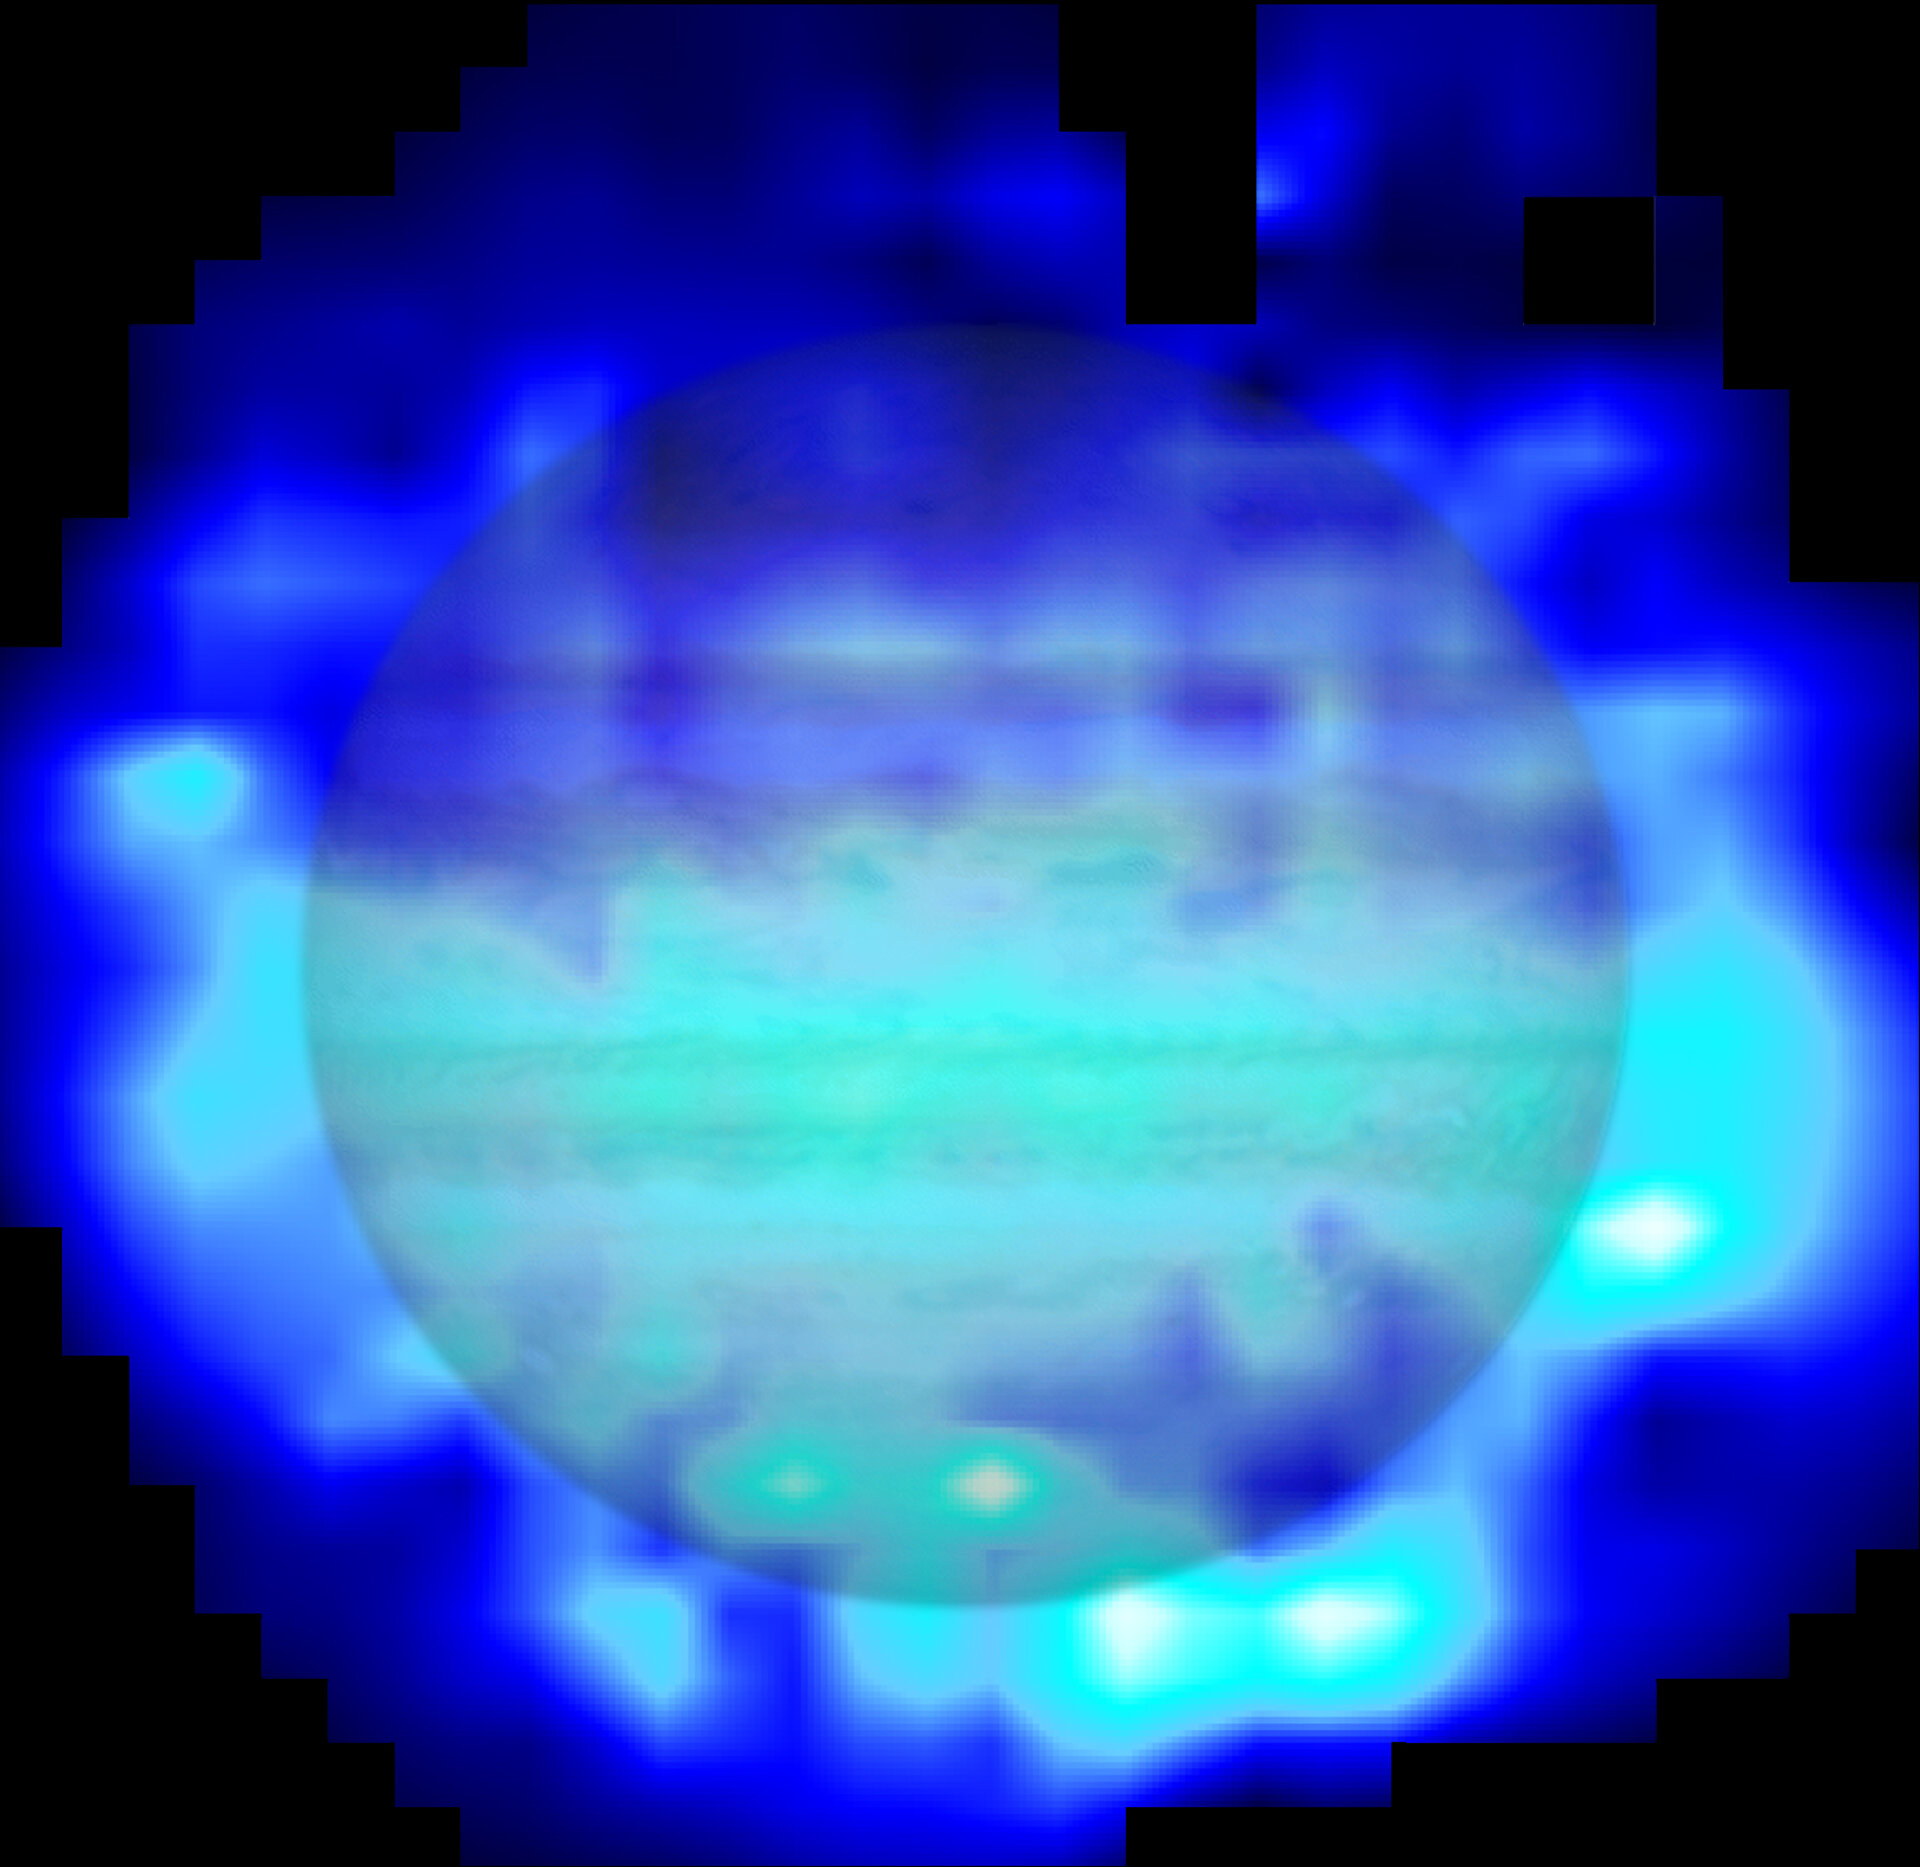 Water in Jupiter’s atmosphere